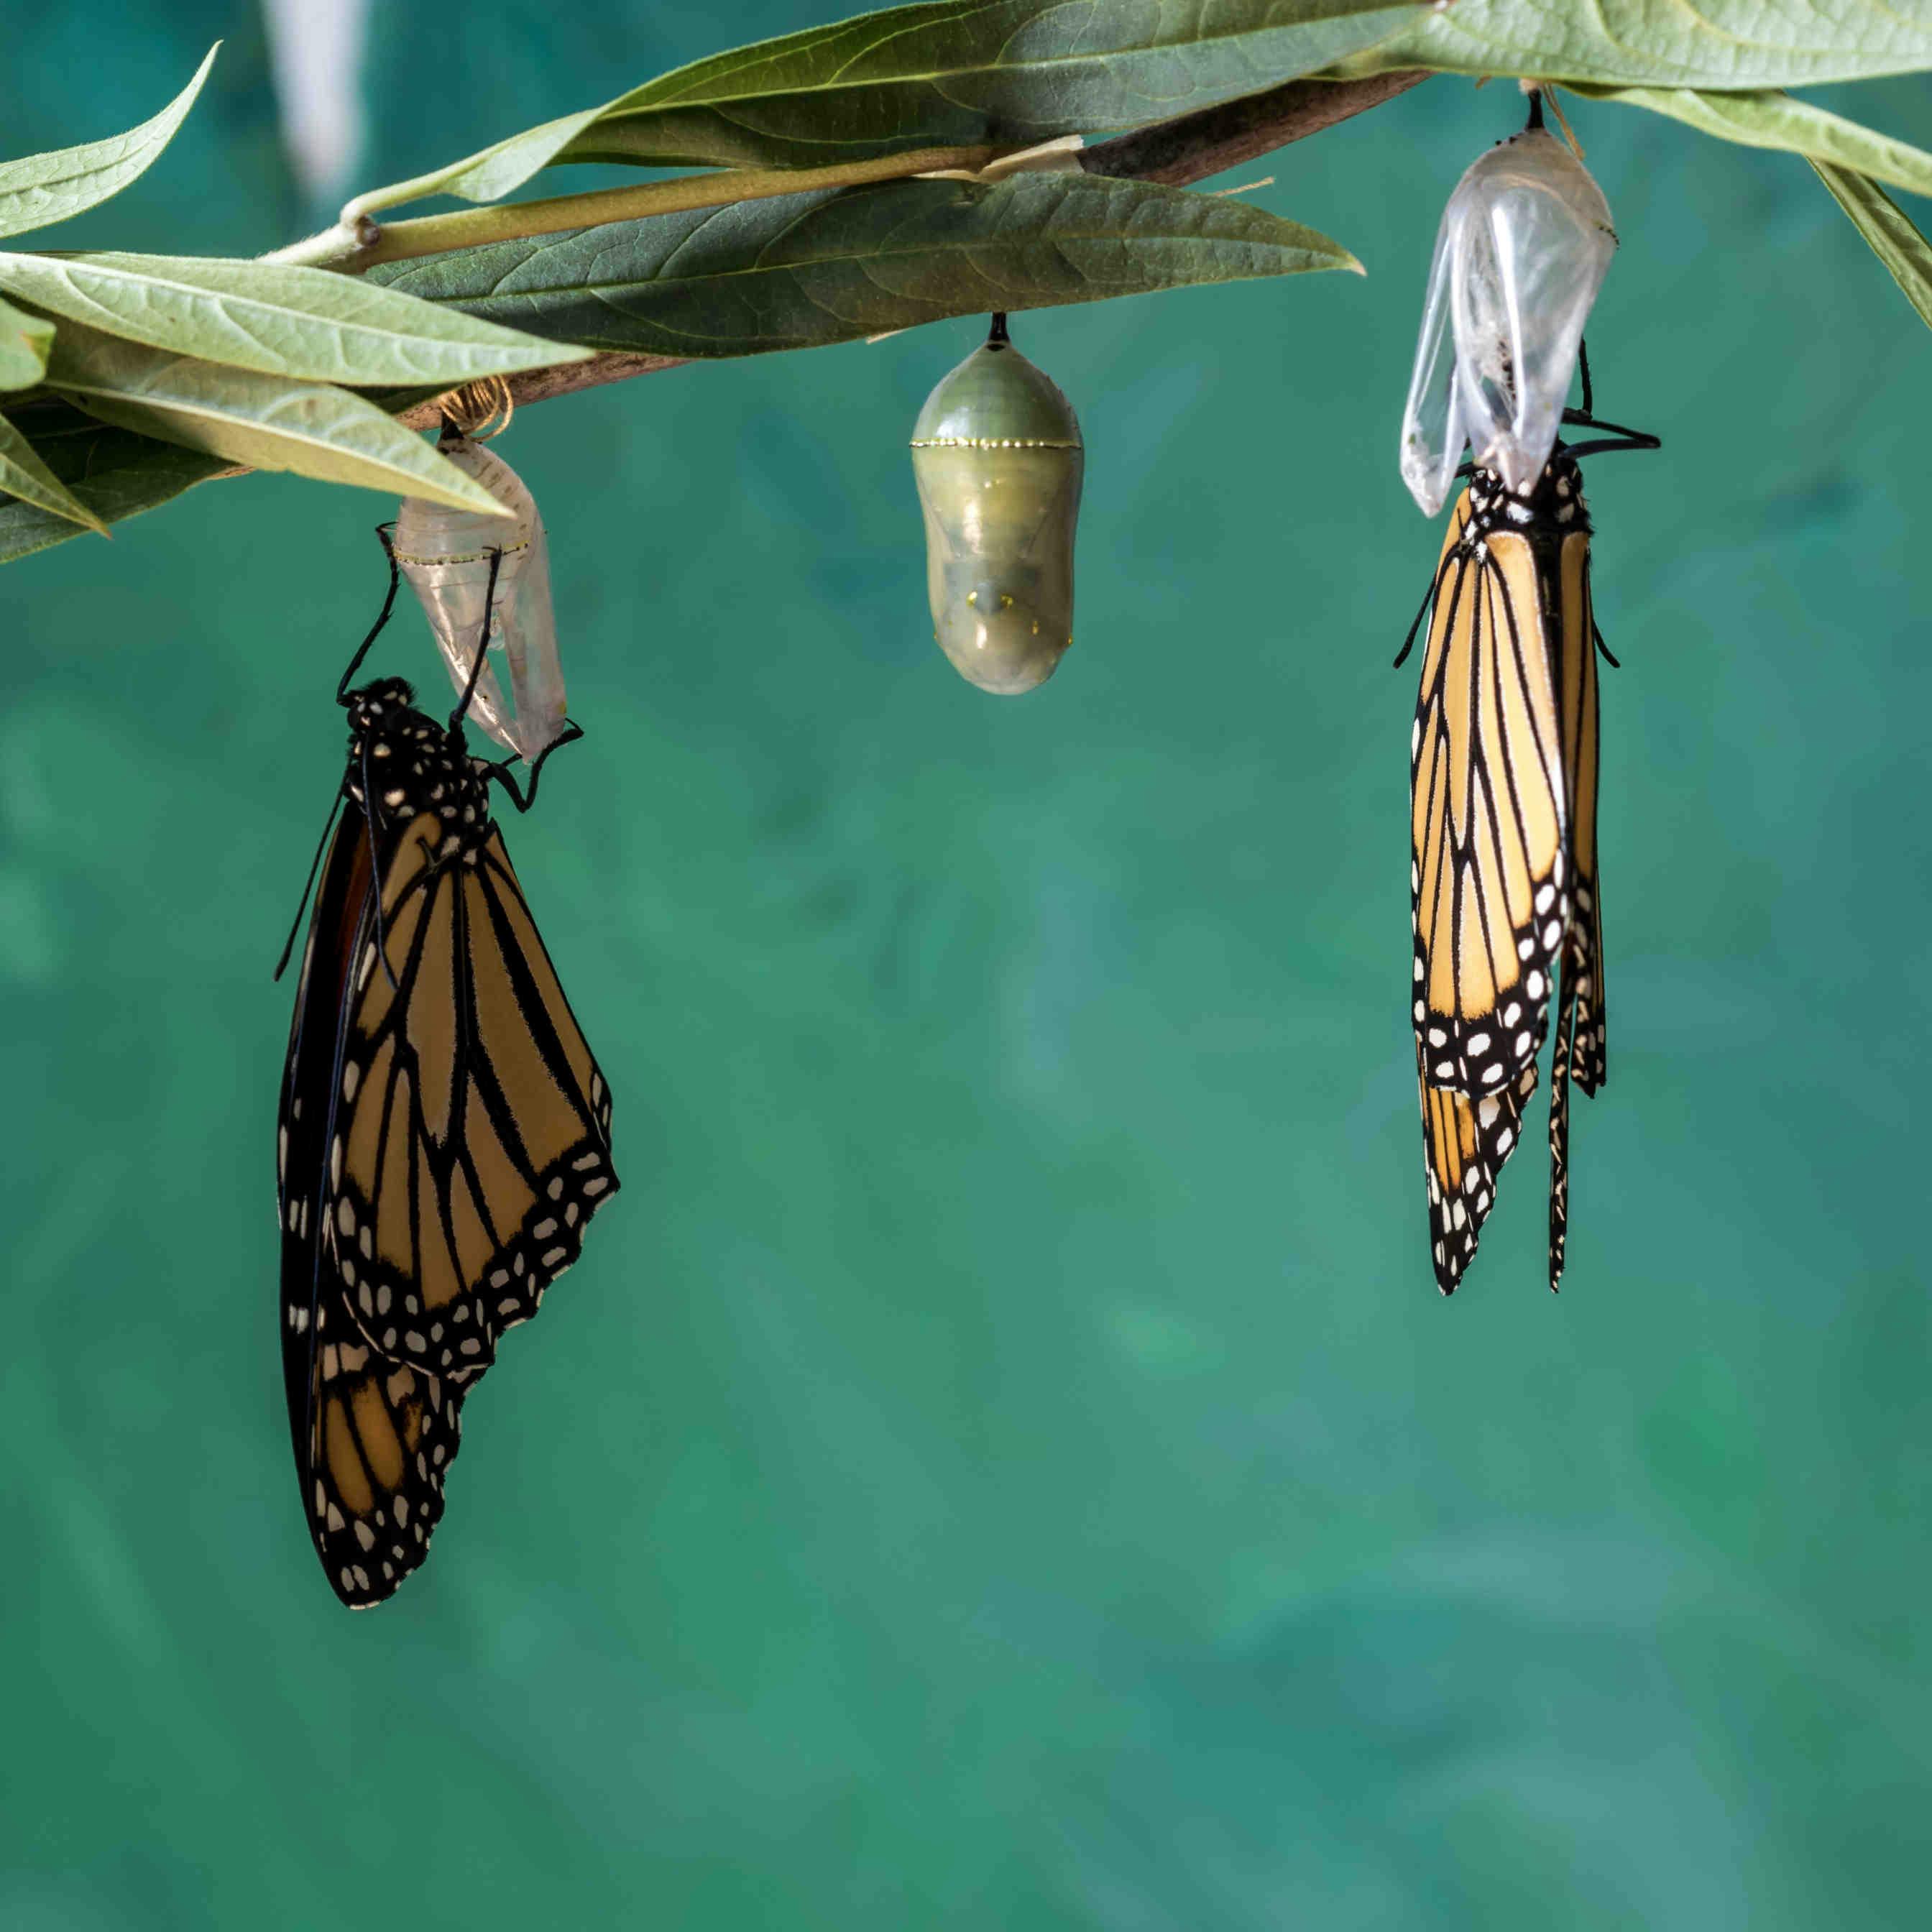 El ciclo vital de las mariposas: etapas